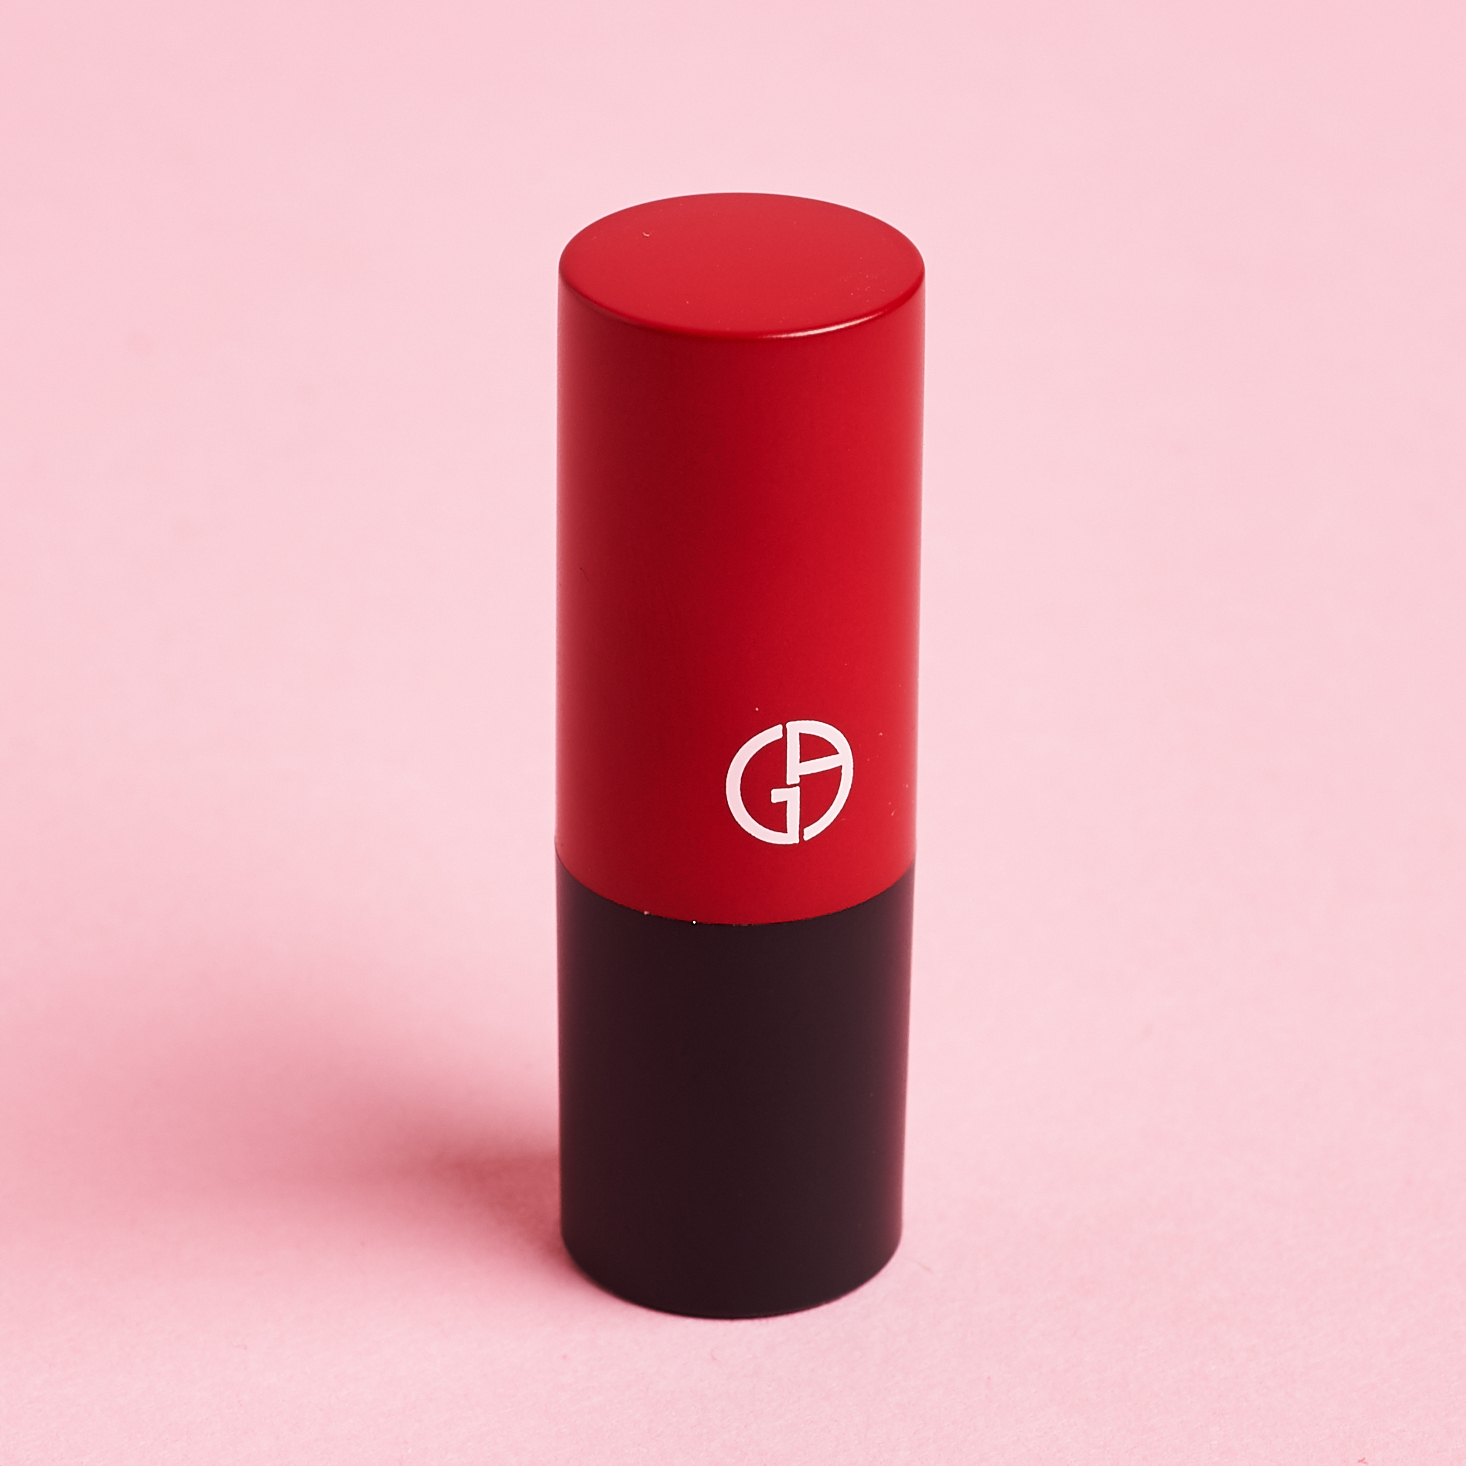 Giorgio Armani Beauty Rouge D’ Armani Matte lipstick